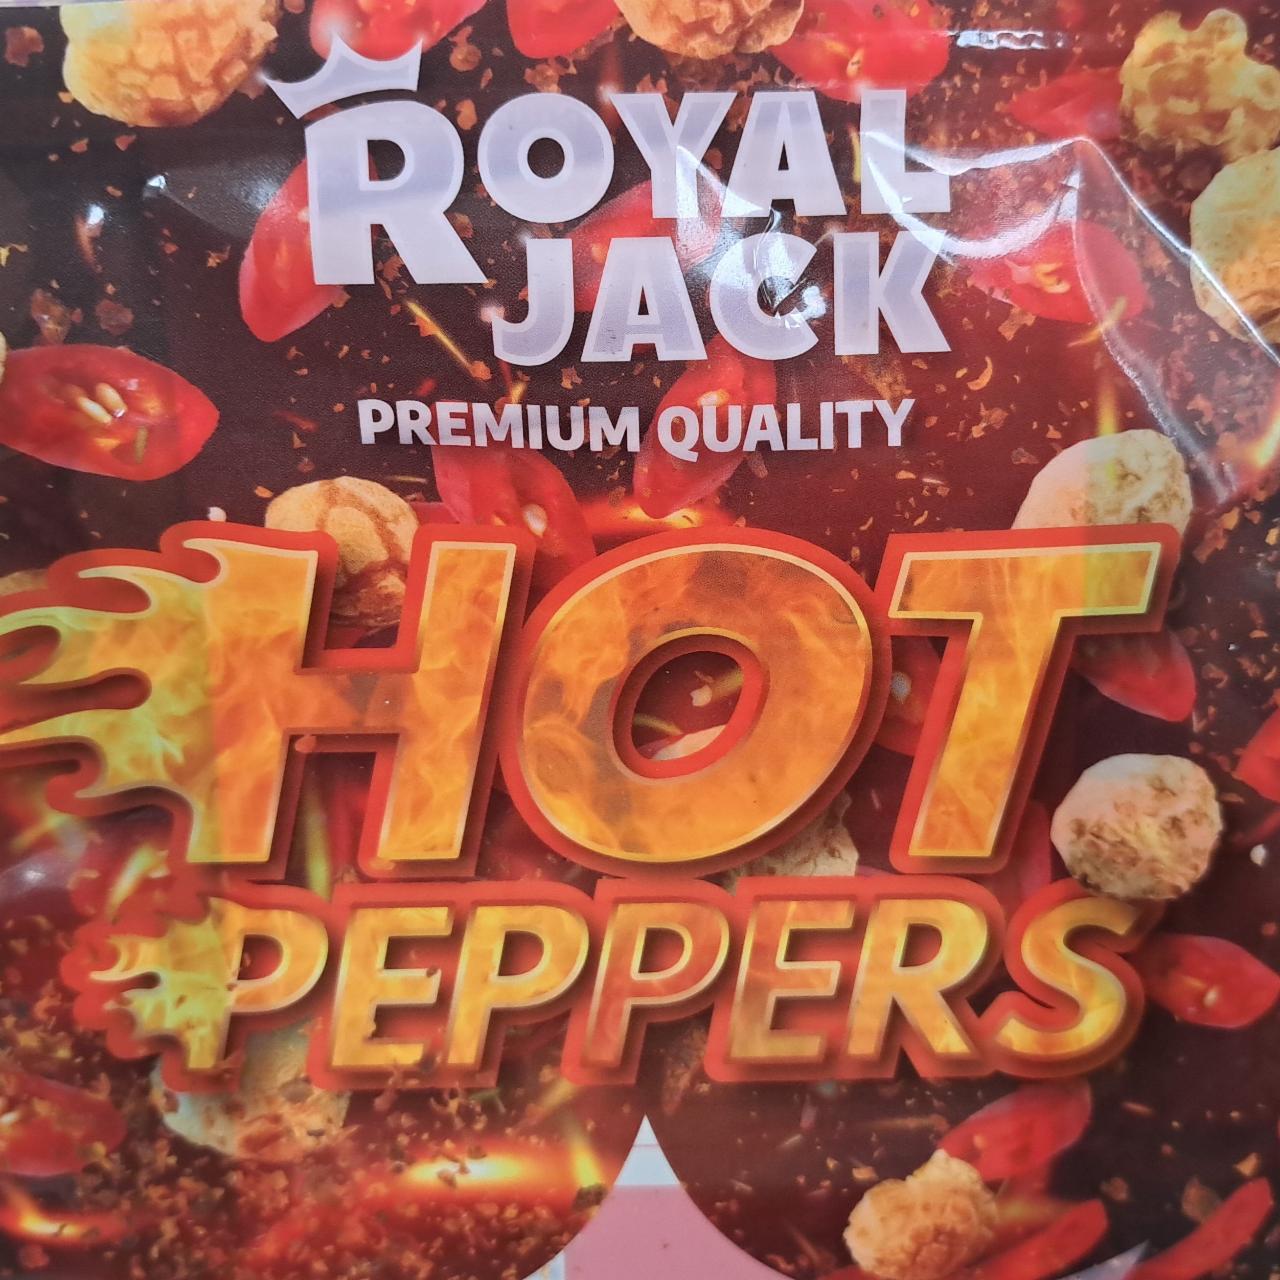 Fotografie - Hot Peppers Royal Jack